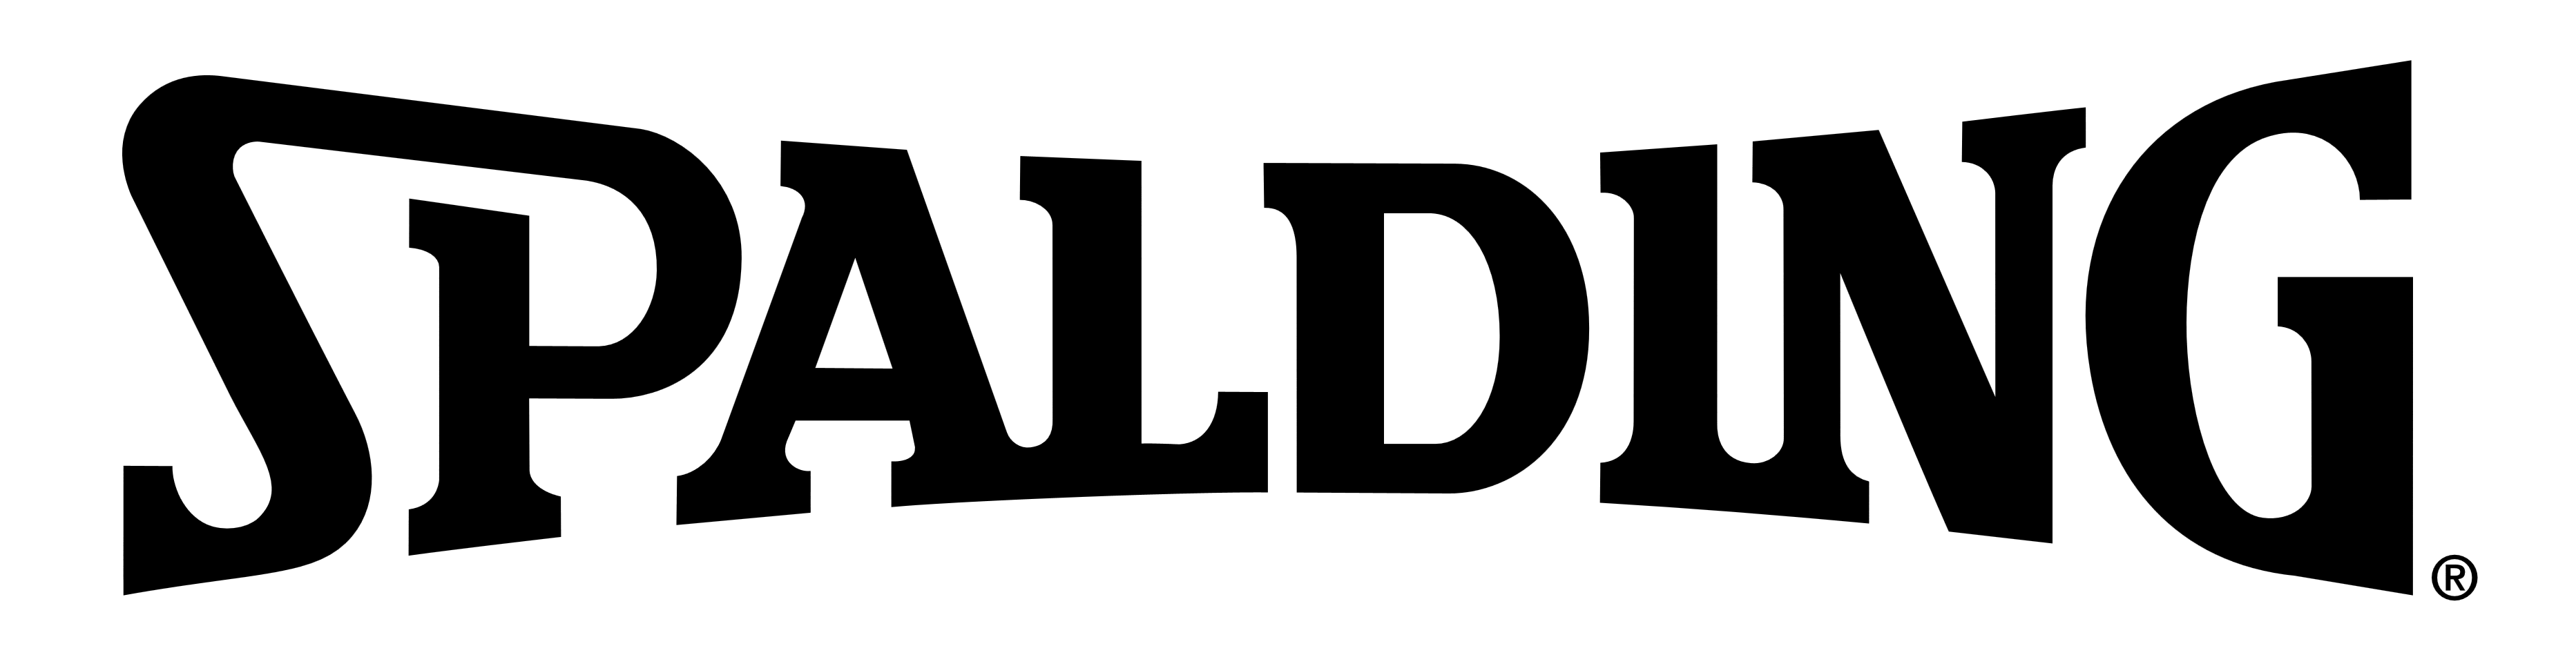 Spalding Logo - Spalding – Logos Download